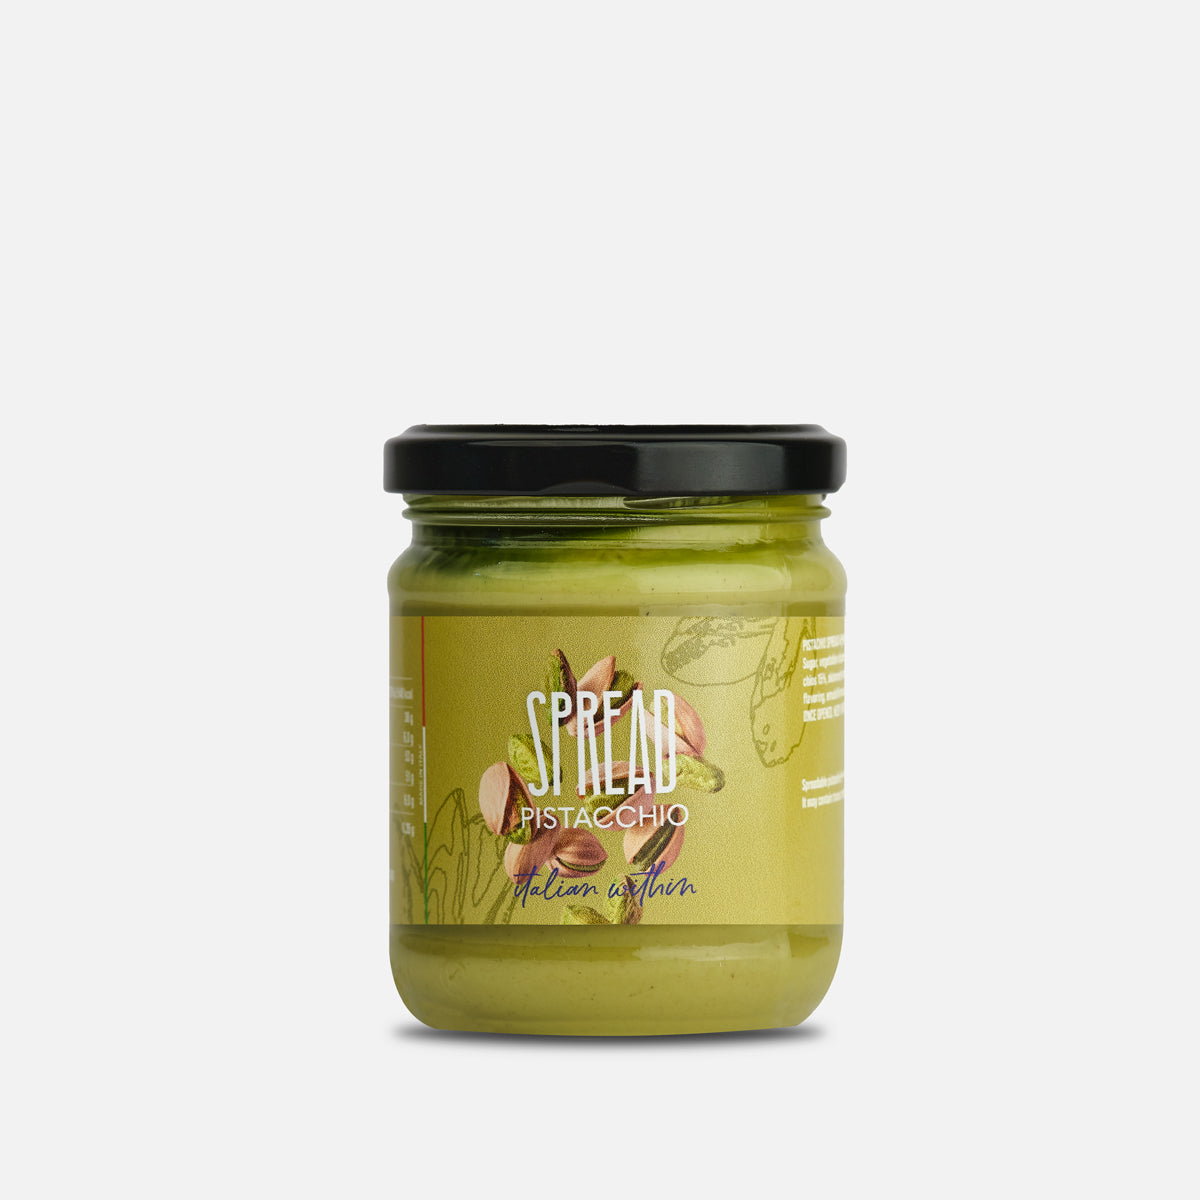 Pistachio Cream Artisanal product